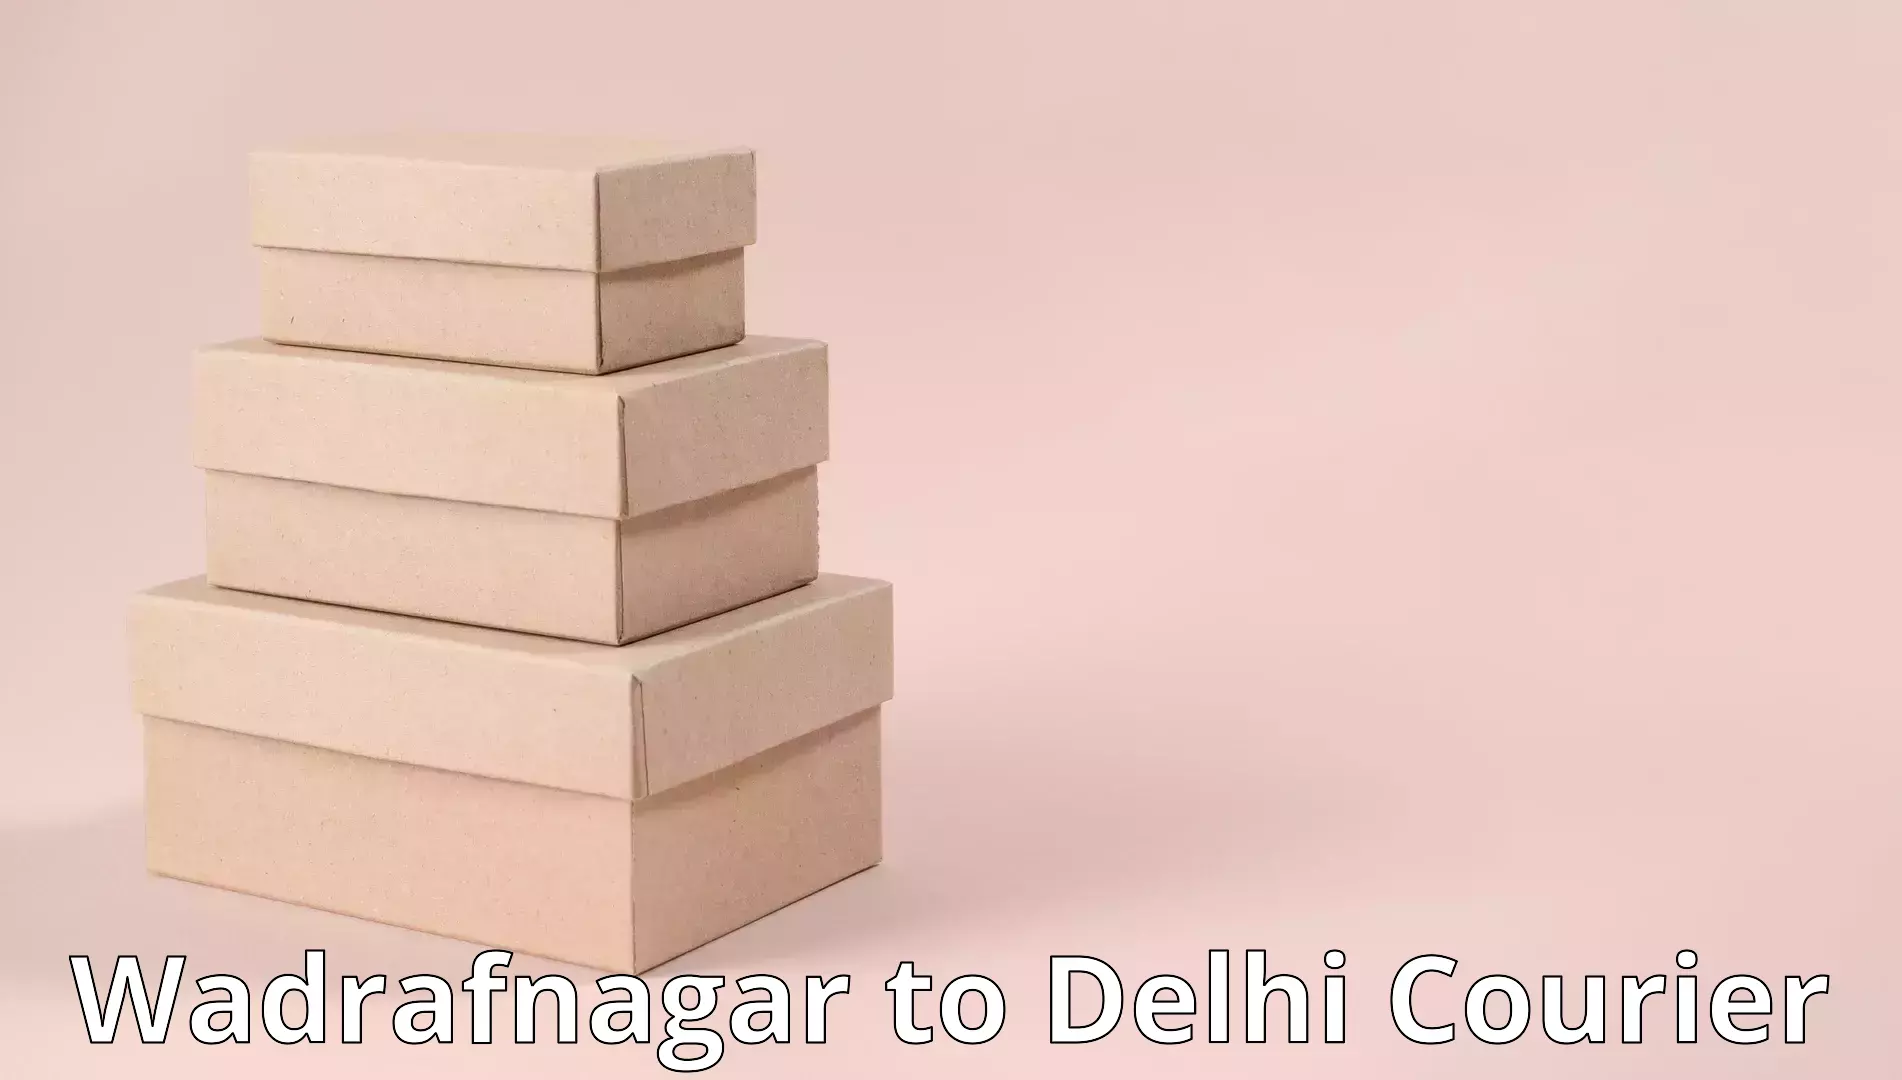 Quality moving company Wadrafnagar to NIT Delhi